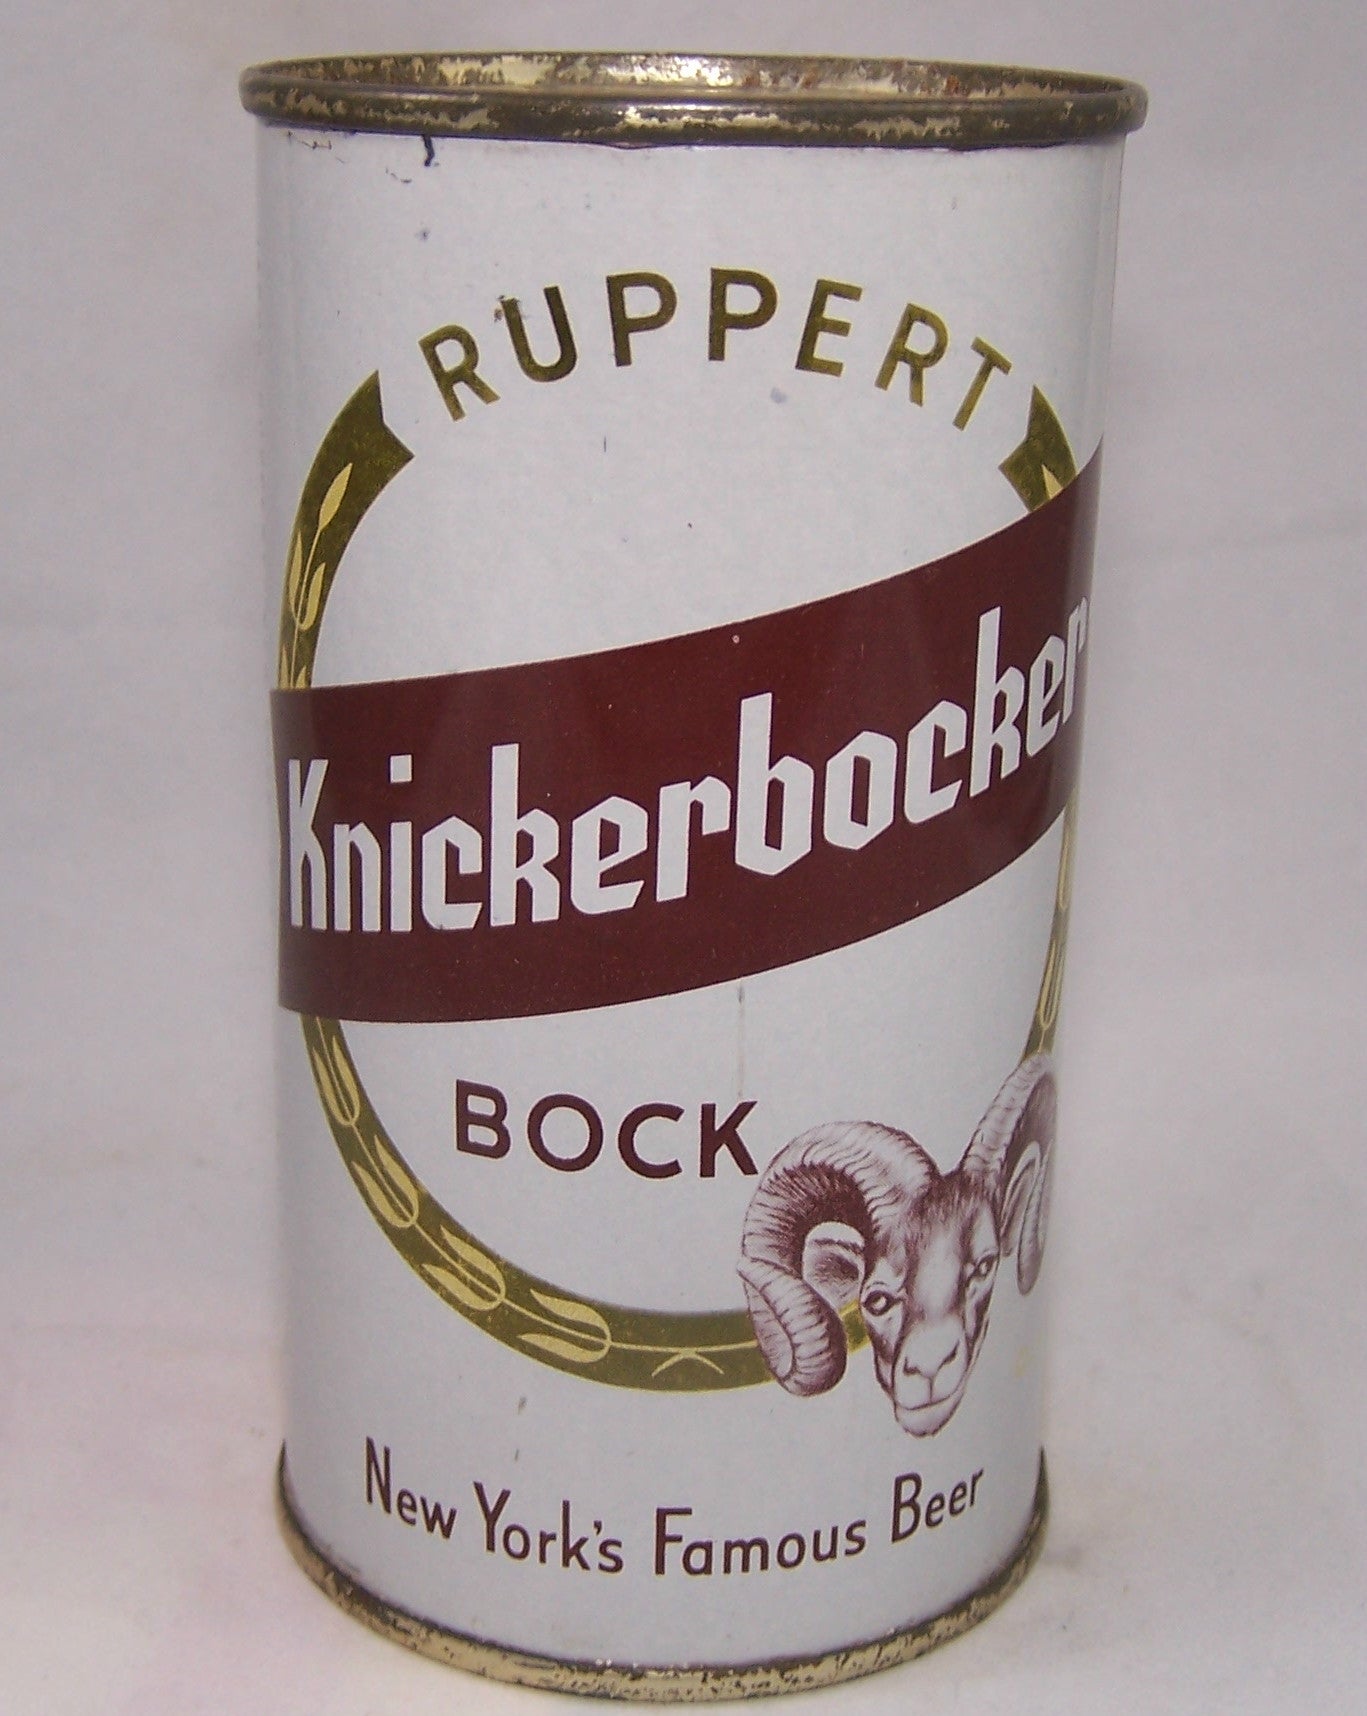 Ruppert Knickerbocker Bock, USBC 126-32, Grade 1 to 1/1+ Sold on 10/03/17